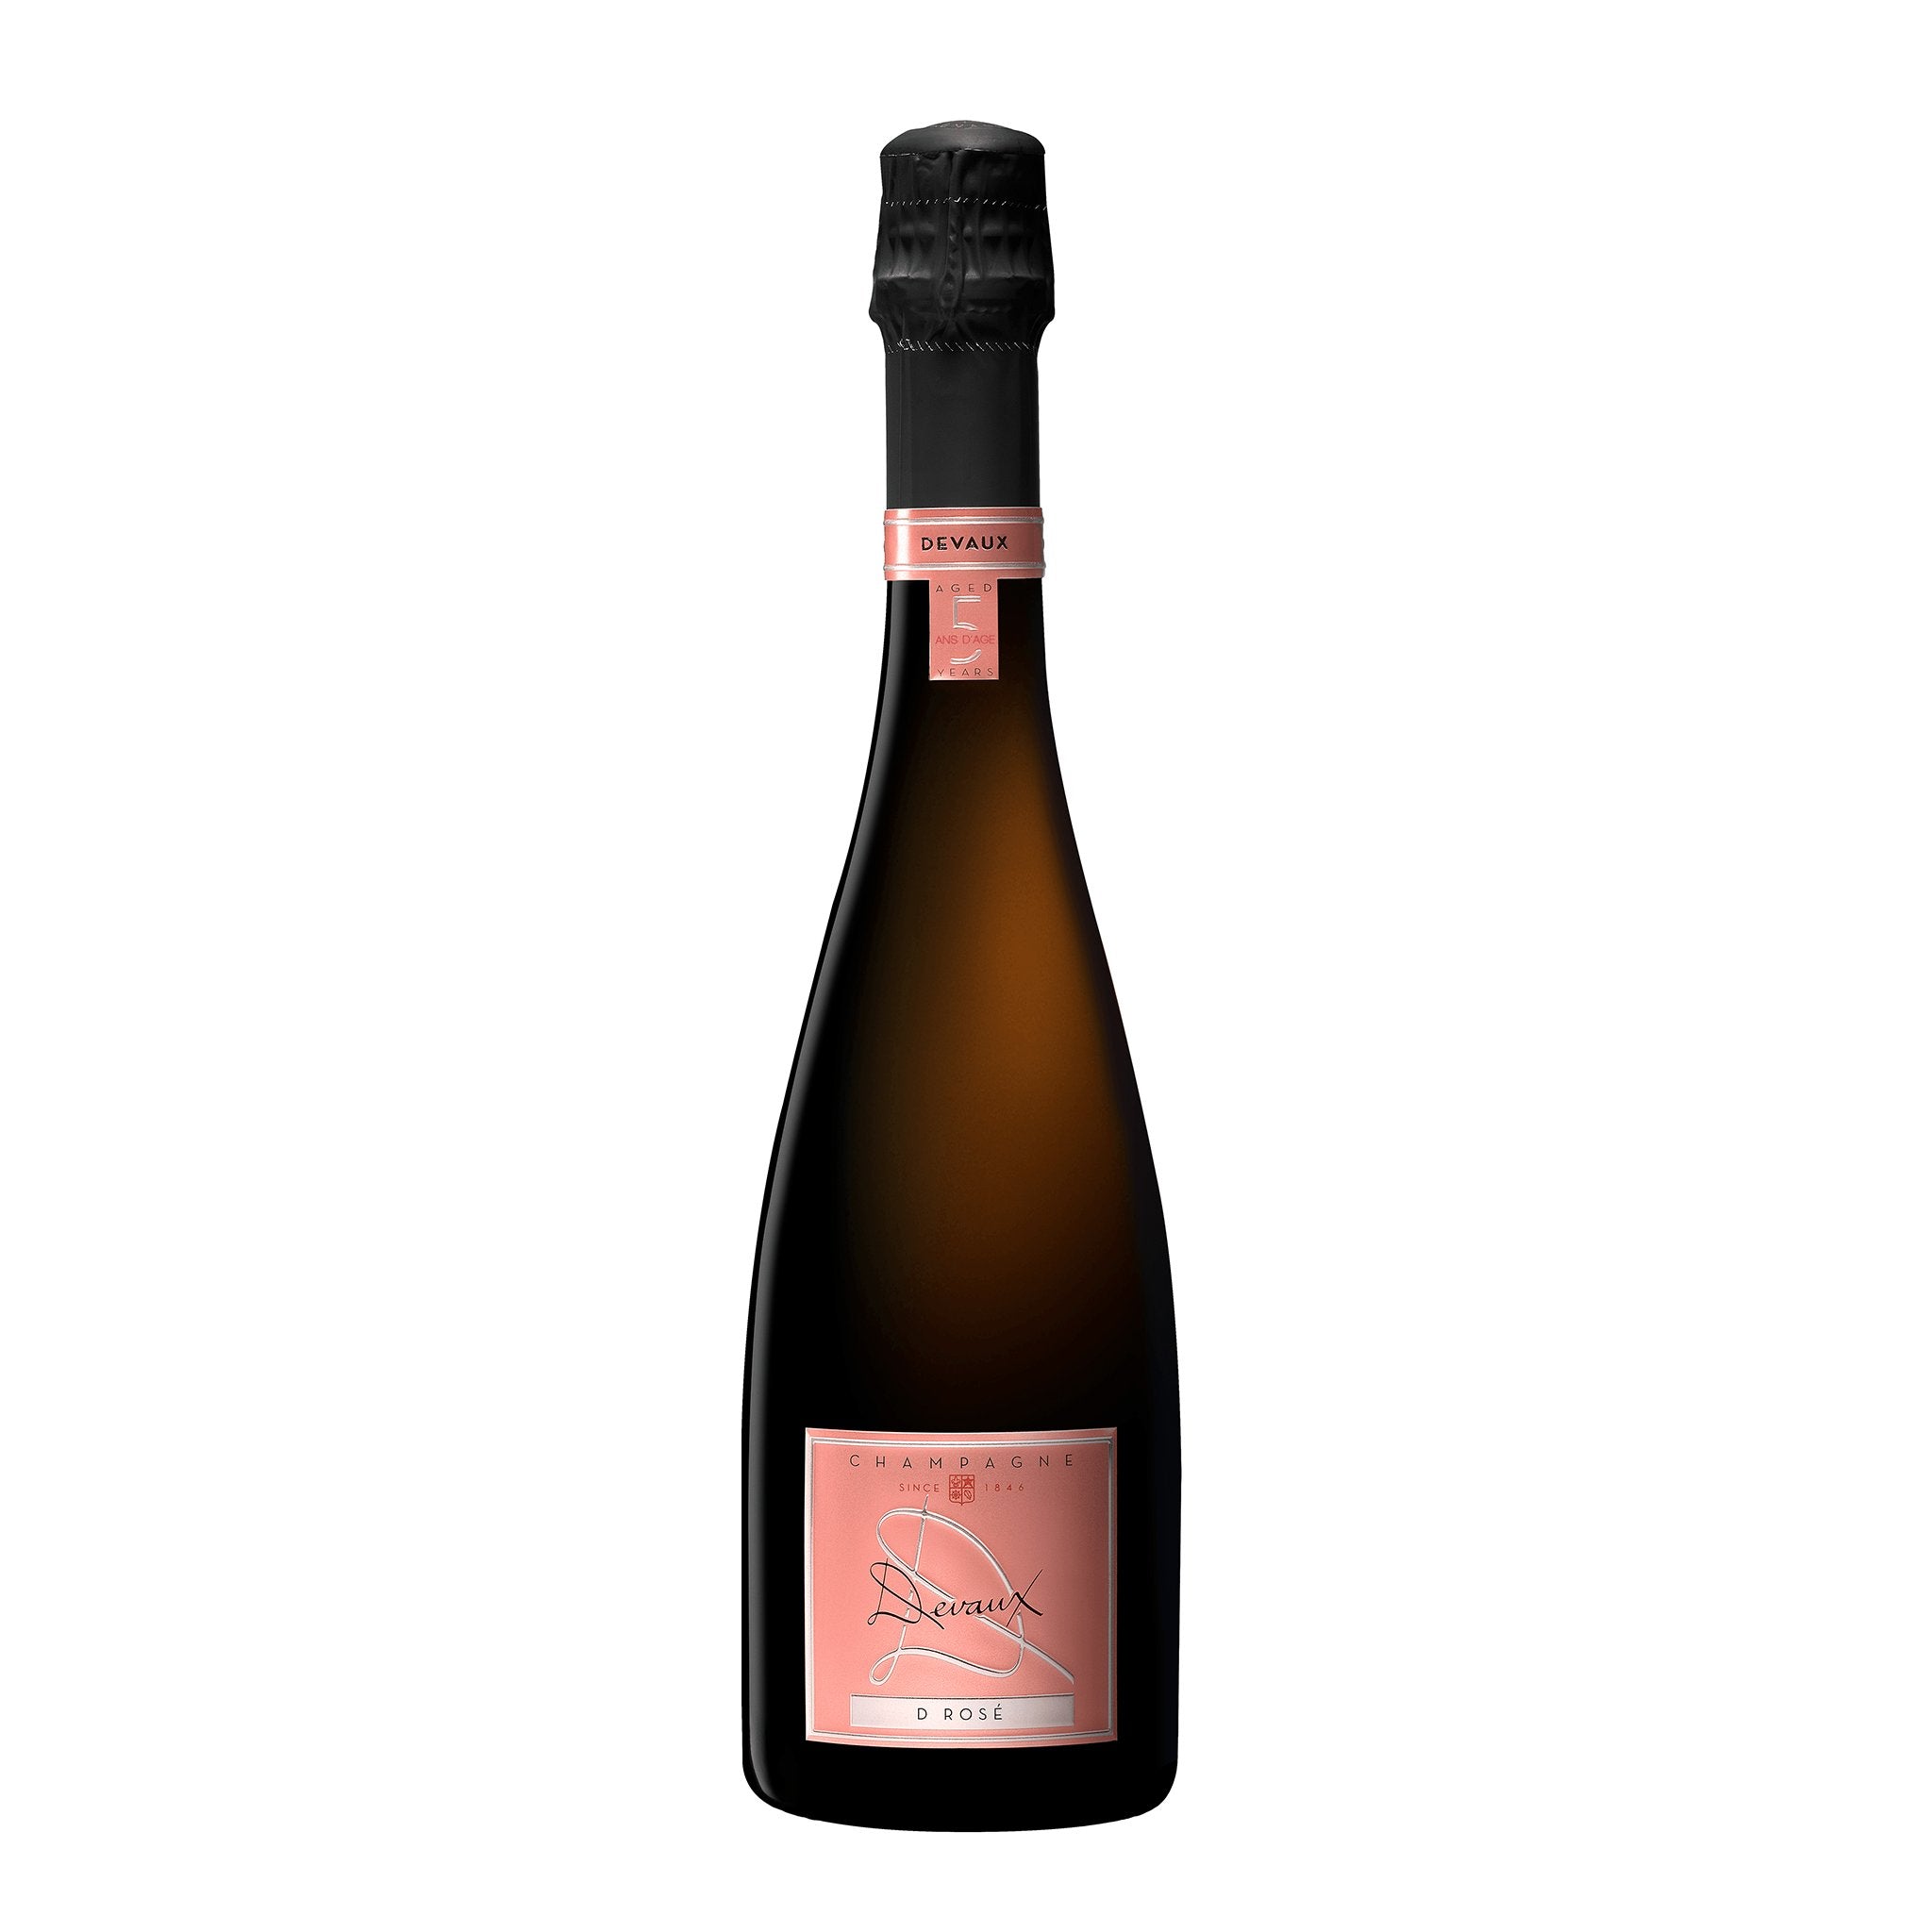 Devaux D Rosé Brut Champagne - Summergate